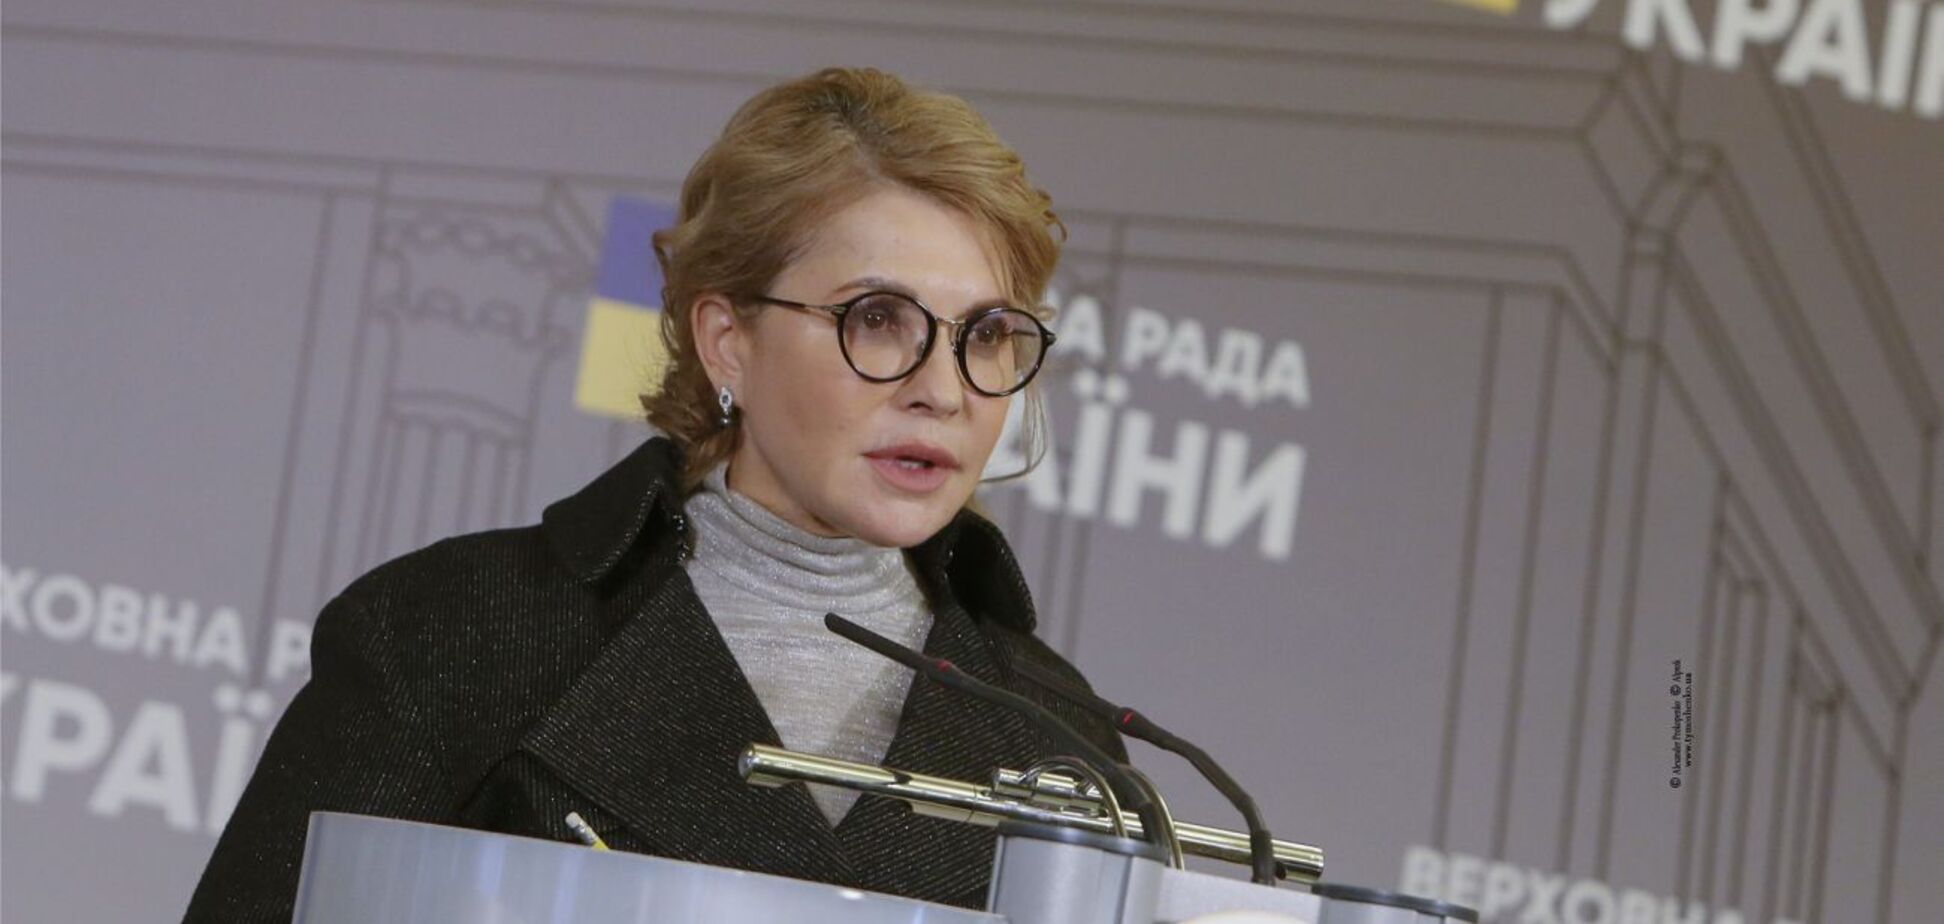 Результати виборів показали, що 'Батьківщина' є альтернативою чинній владі, – Тимошенко